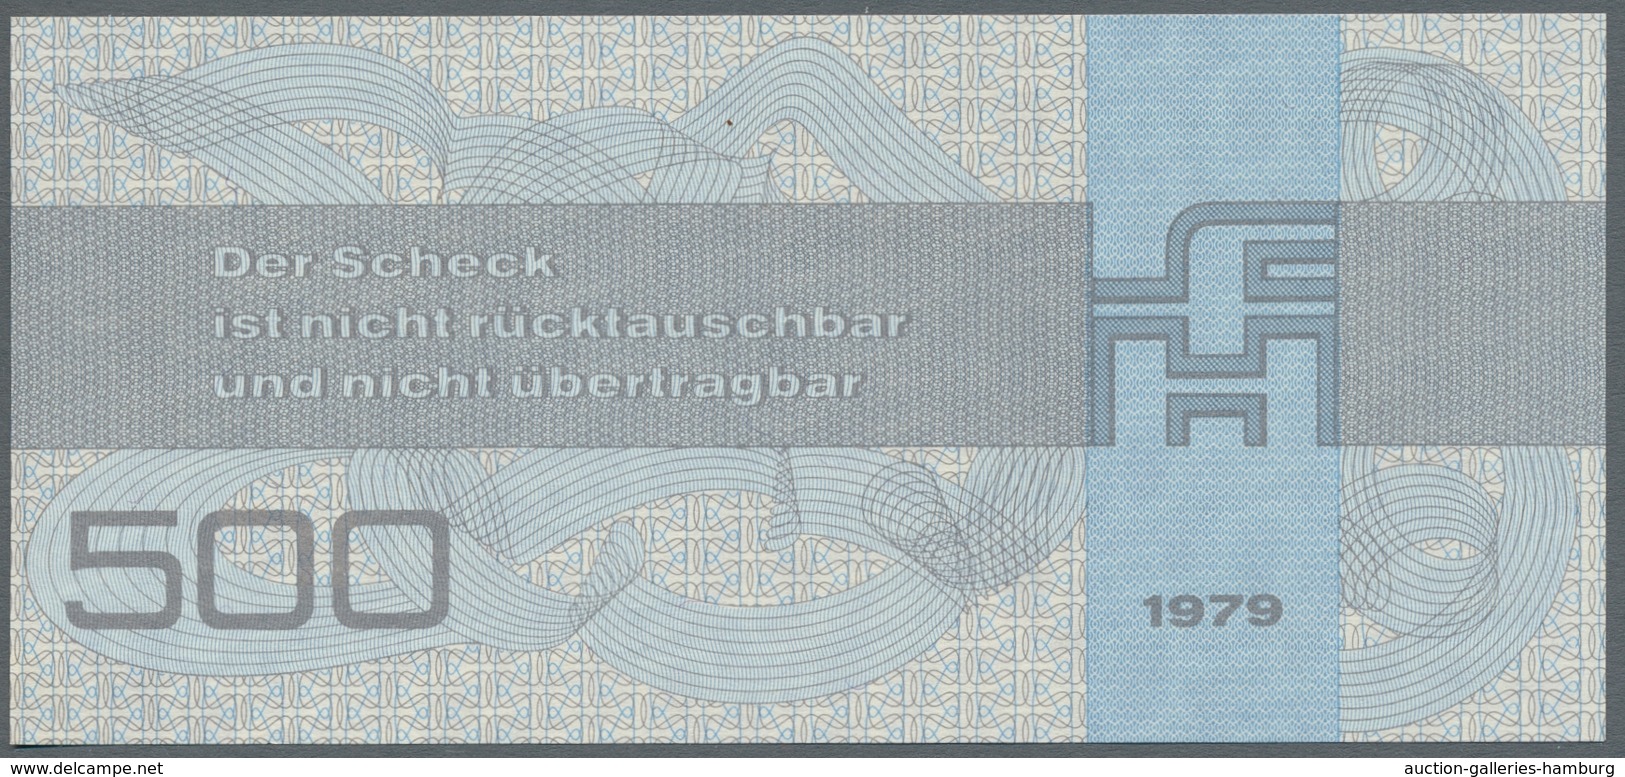 Deutschland - Deutsches Reich bis 1945: 1898-1985, Sammlung von etwa 230 Banknoten welche überwiegen